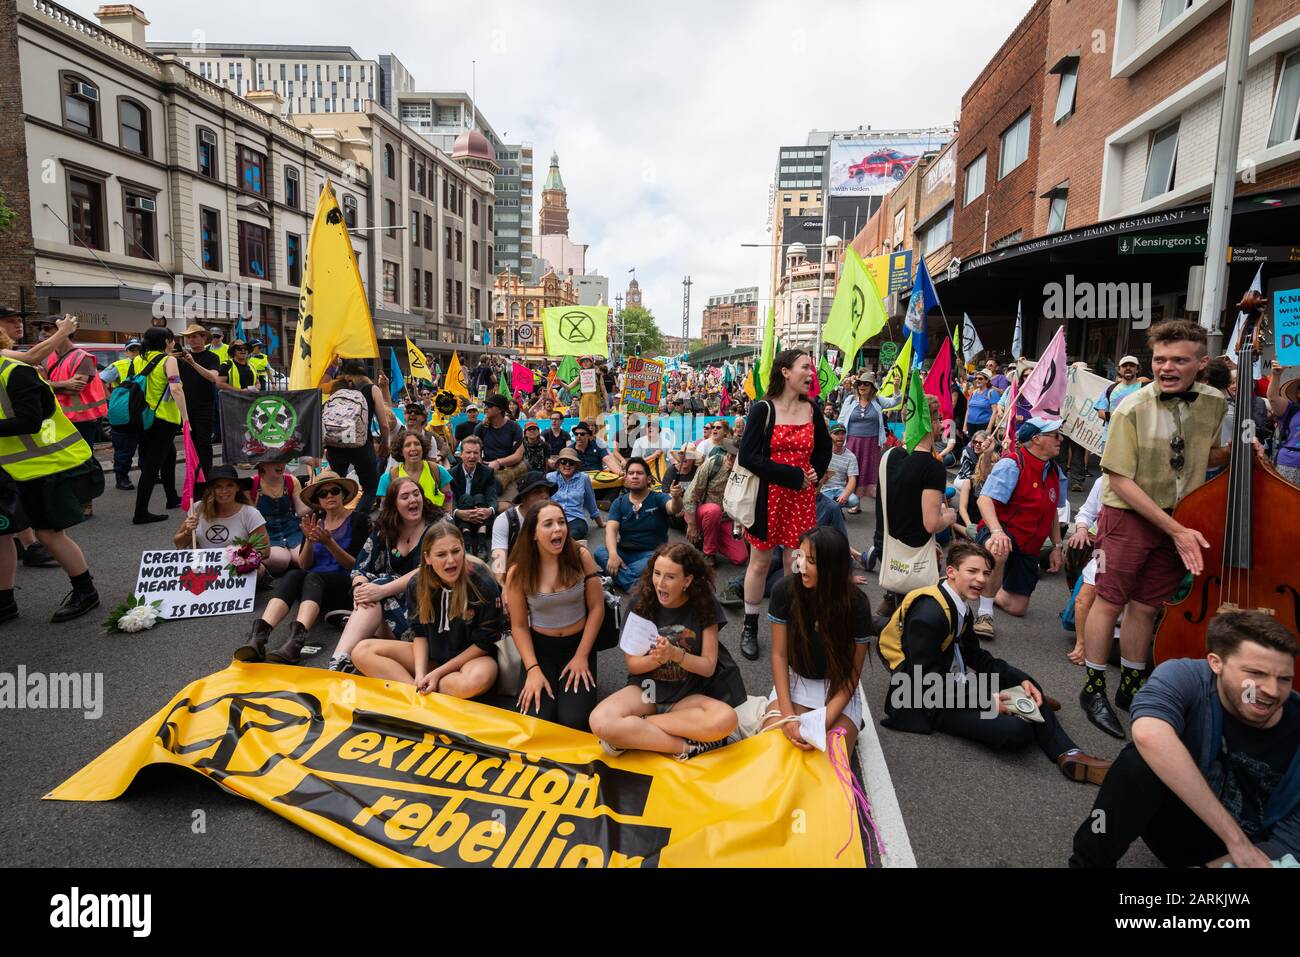 Sydney, Australia - 7 de octubre de 2019 - Cientos de activistas australianos De La rebelión De La Extinción se reúnen en Belmore Park para una protesta por el cambio climático. Foto de stock